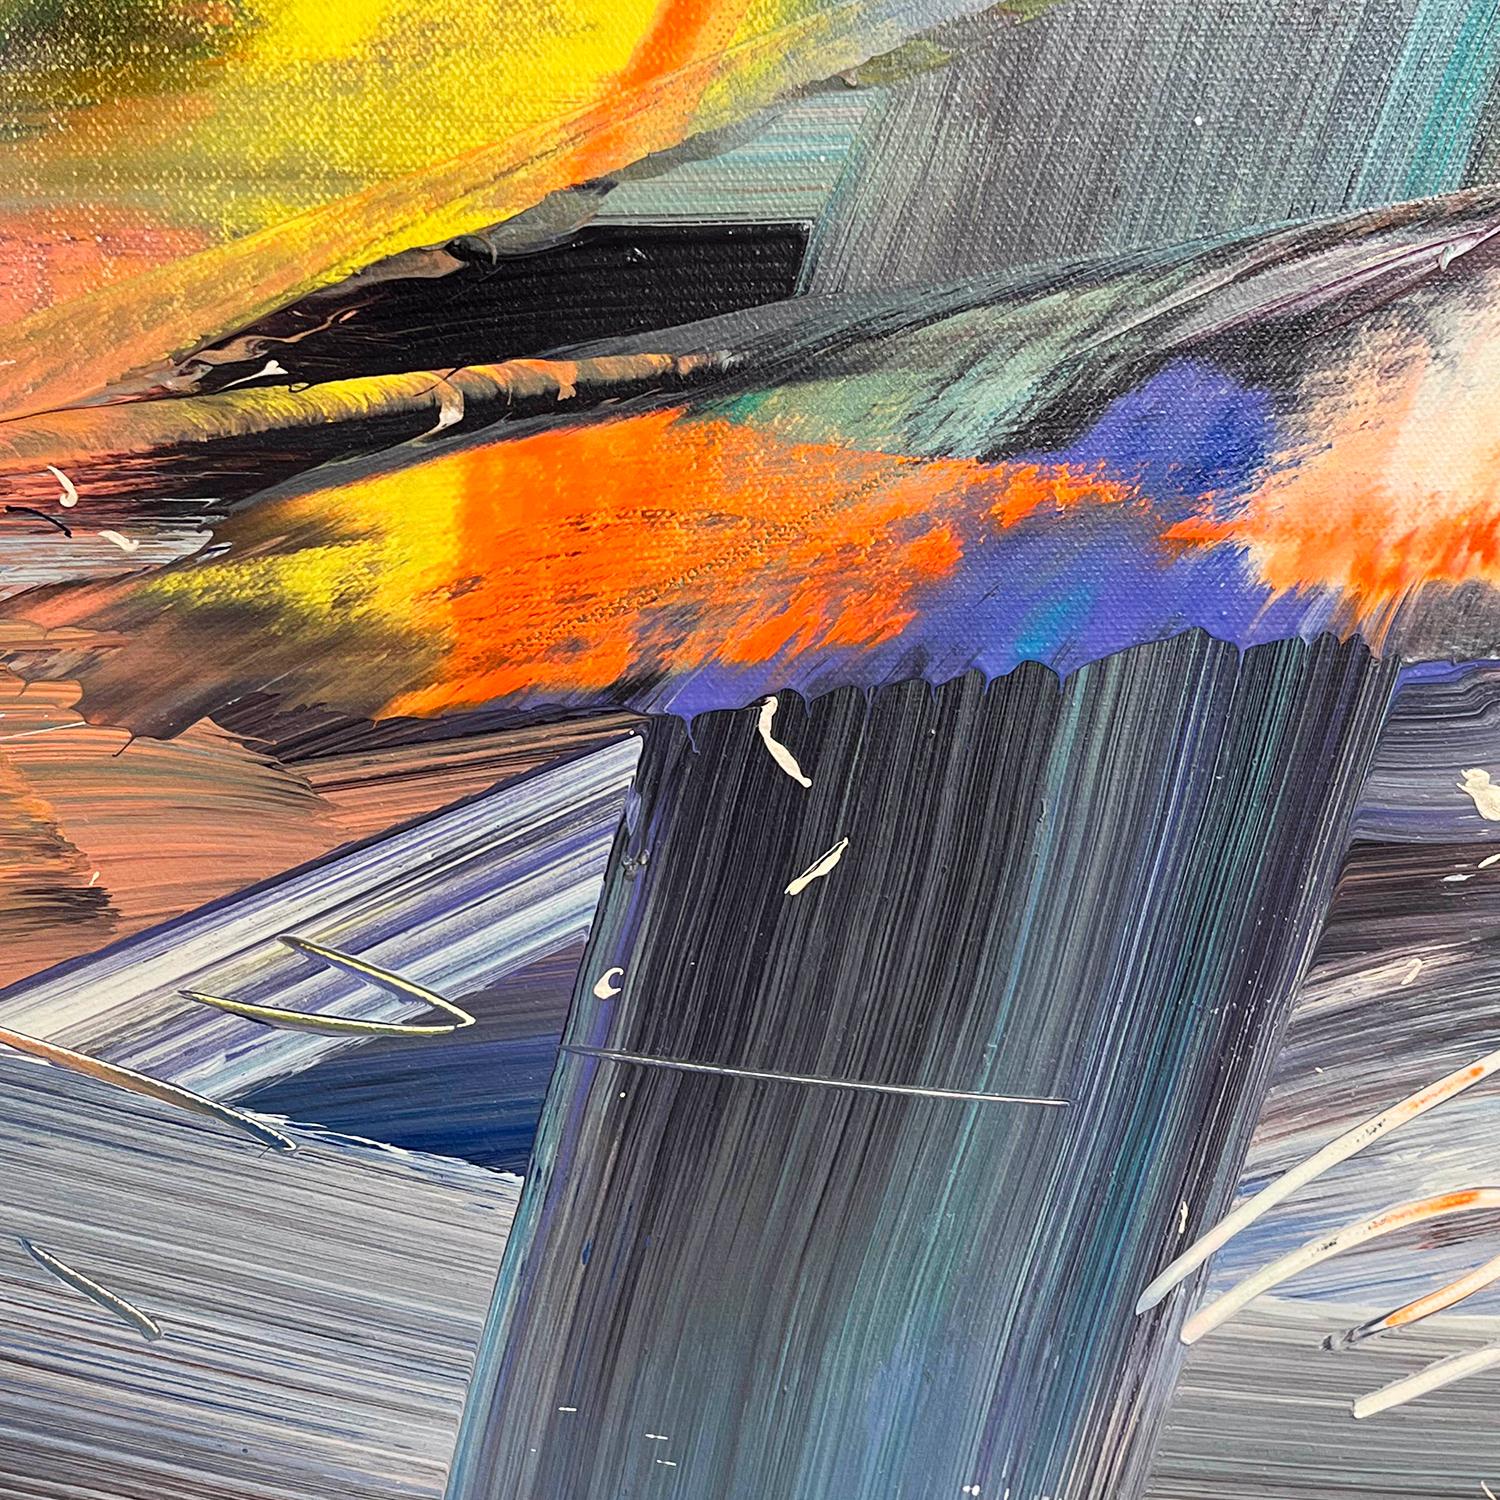 Joel Masewichs vielschichtige, imaginär-abstrakte Werke stellen seine emotionale Reaktion auf Landschaften dar, wobei viele seiner Werke visuelle Bezüge zu Wasser oder Licht enthalten. Die lebhaften Farbtöne sind so kontrastreich, als würden sie von